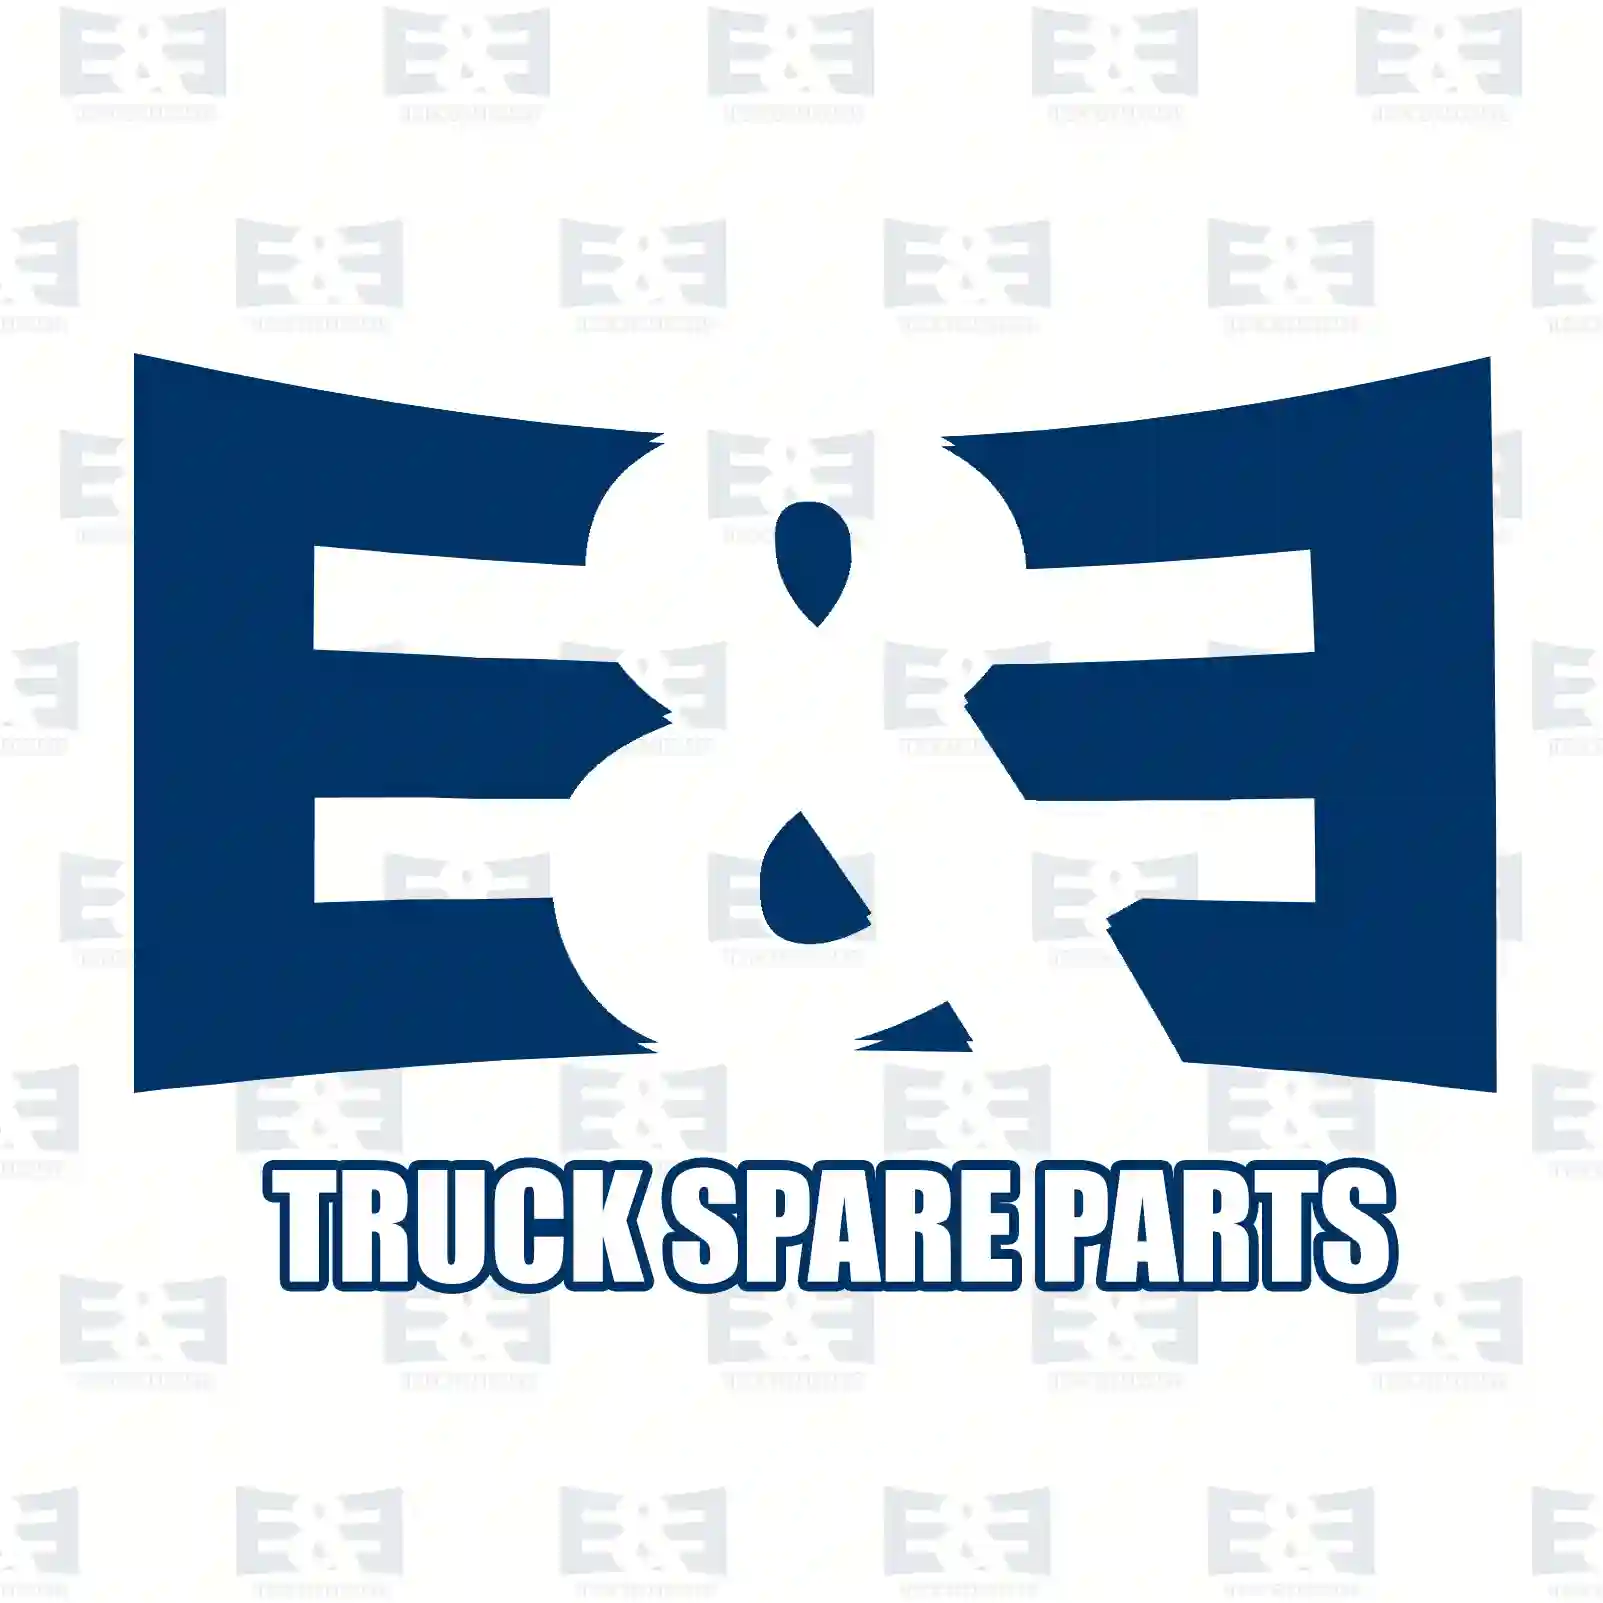 Air tank, 2E2294794, 051202, 1189864, 1193014, 115808 ||  2E2294794 E&E Truck Spare Parts | Truck Spare Parts, Auotomotive Spare Parts Air tank, 2E2294794, 051202, 1189864, 1193014, 115808 ||  2E2294794 E&E Truck Spare Parts | Truck Spare Parts, Auotomotive Spare Parts